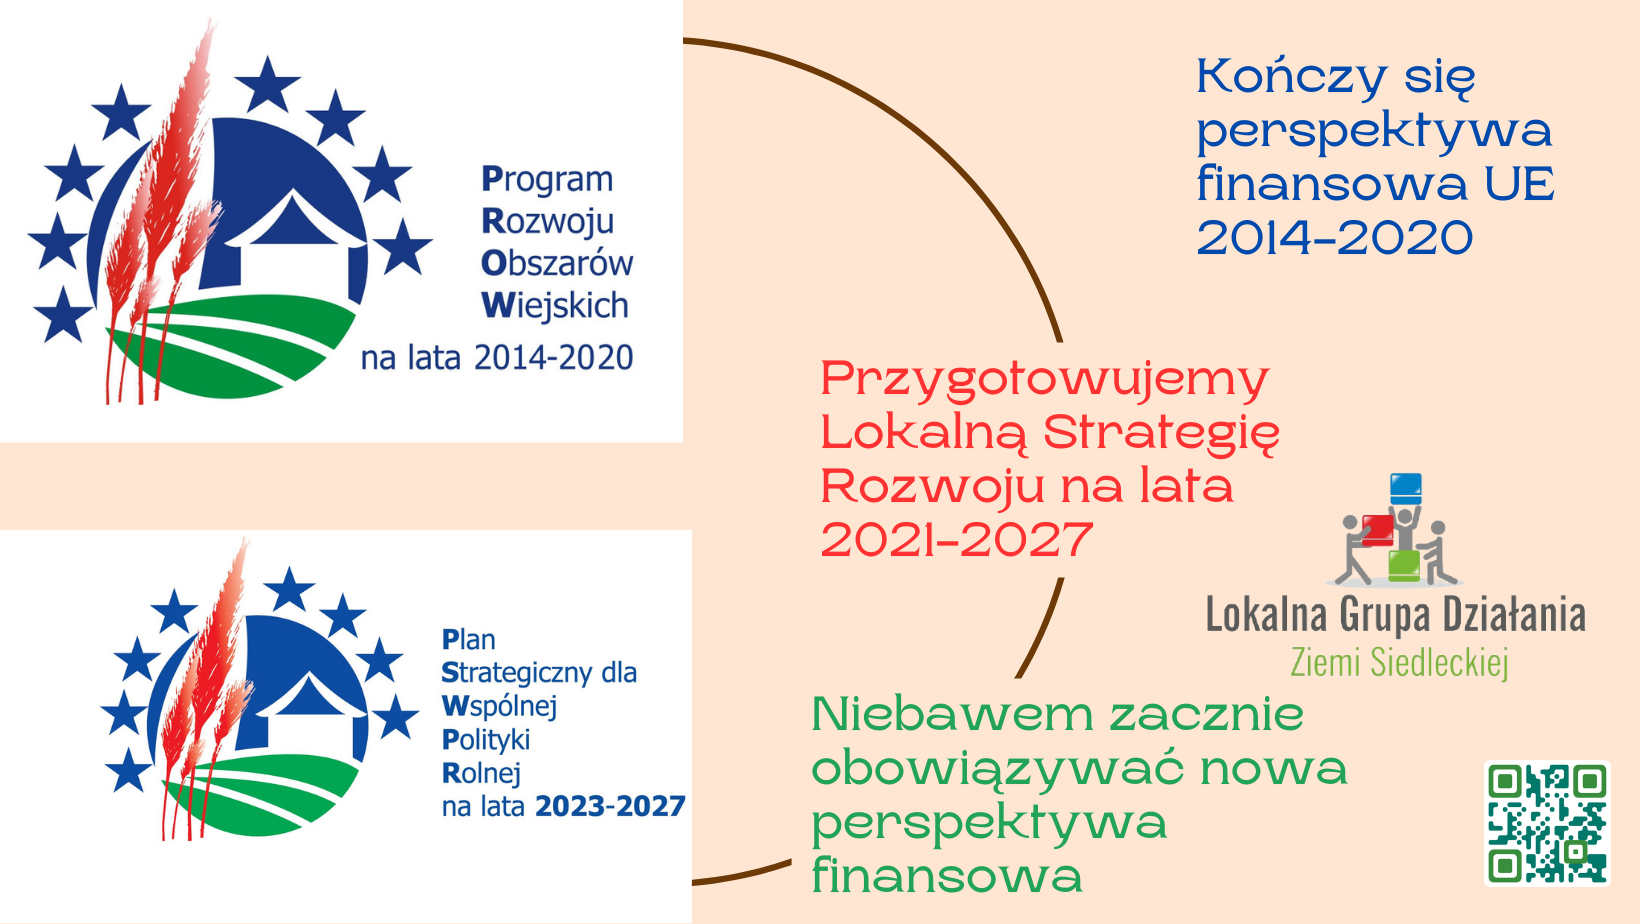 Kończy się perspektywa finansowa UE 2014-2020